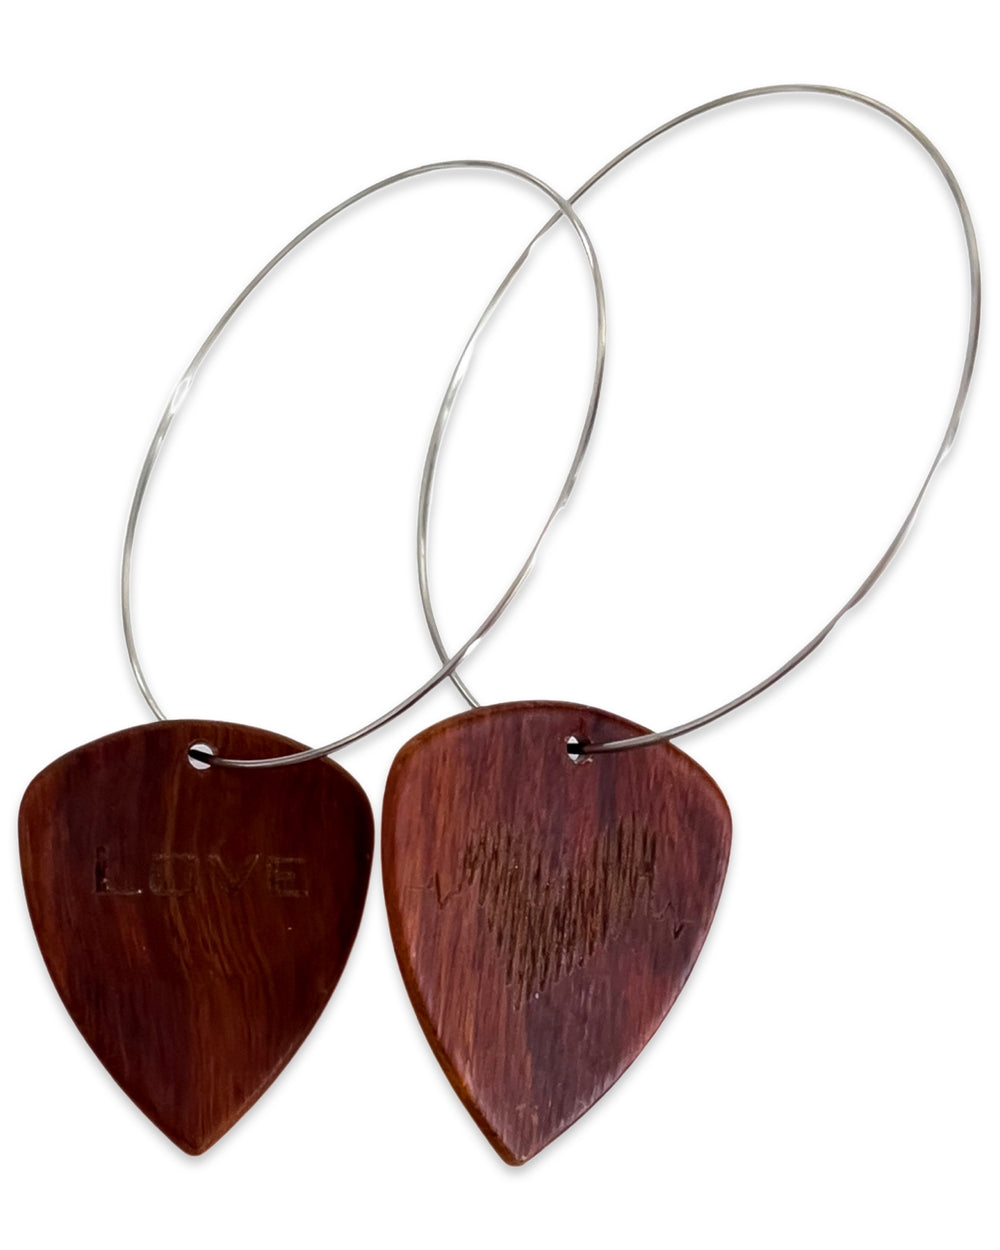 WS Groupie Love Red Sandalwood Wood Reversible Single Guitar Pick Earrings